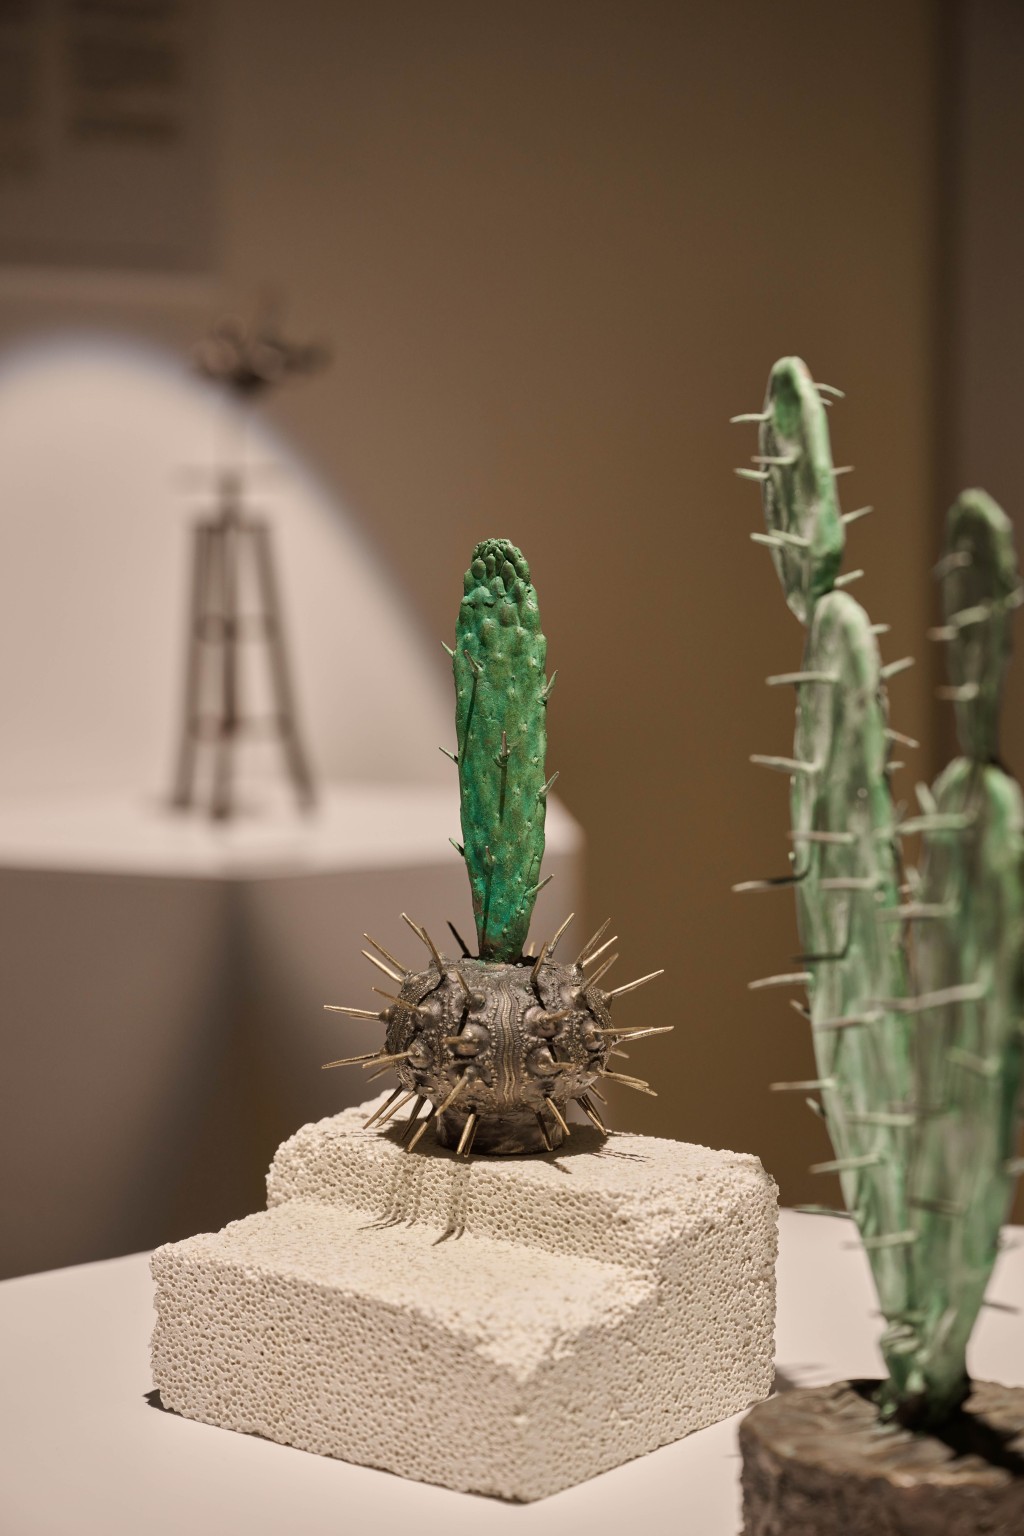 《綠茵隨想》是廖榮想2018年的作品，結合仙人掌與海膽，寓意海陸生物合一，而當中的尖刺形態亦突破傳統的鑄造工藝。